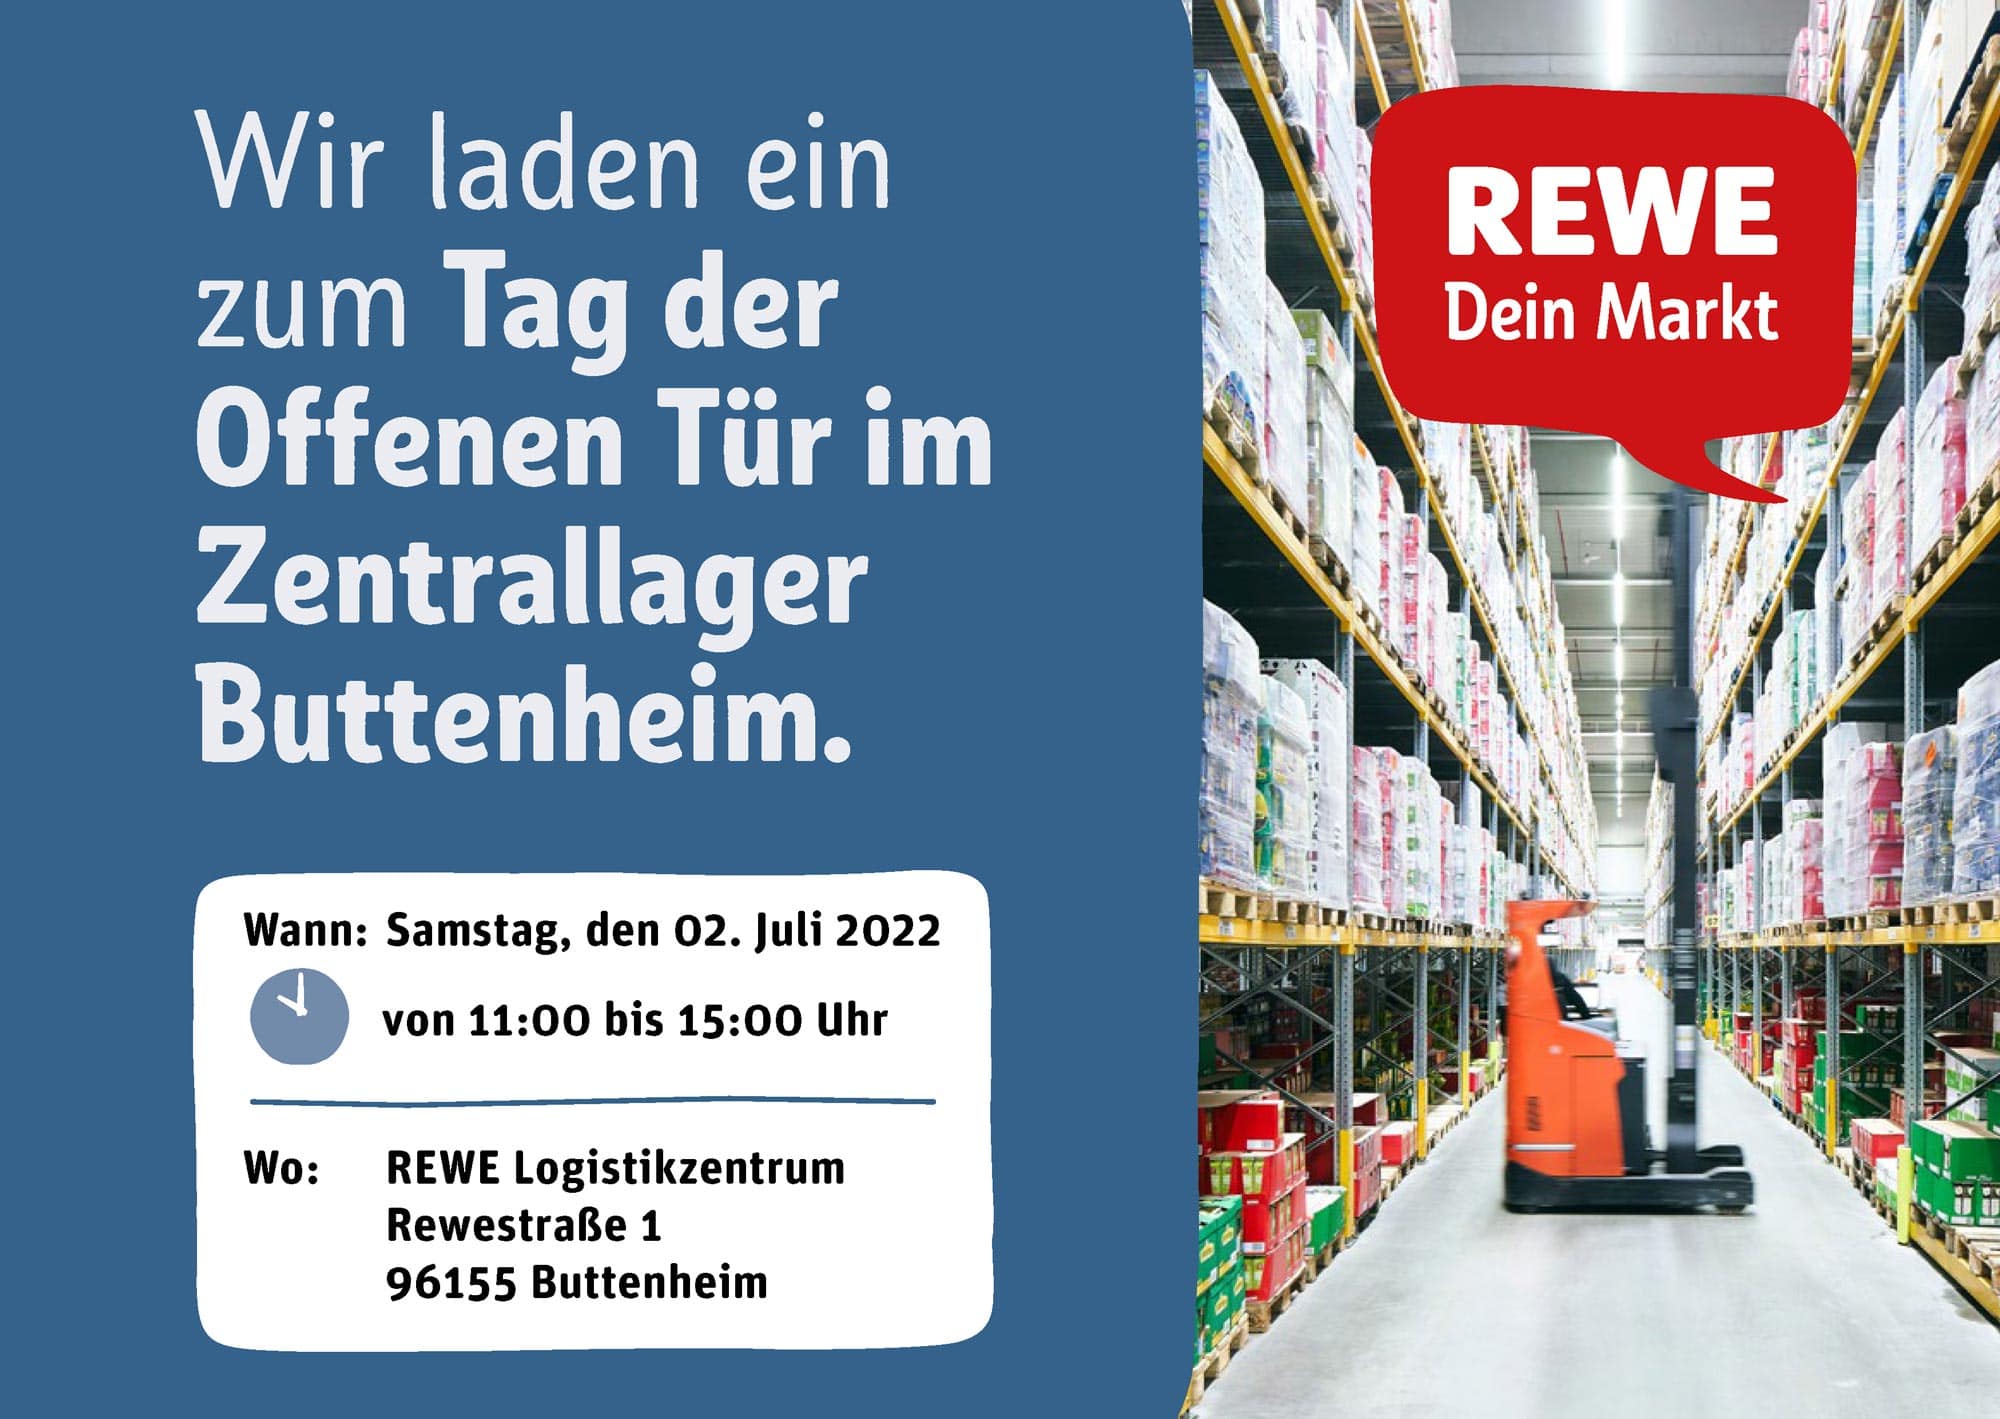 Einladung zum Tag der offenen Tür mit Datum und Adresse. Die Einladung enthält neben Informationen ein Bild der Lagerräume des Logistikzentrums, darauf das REWE Logo "REWE dein Markt".